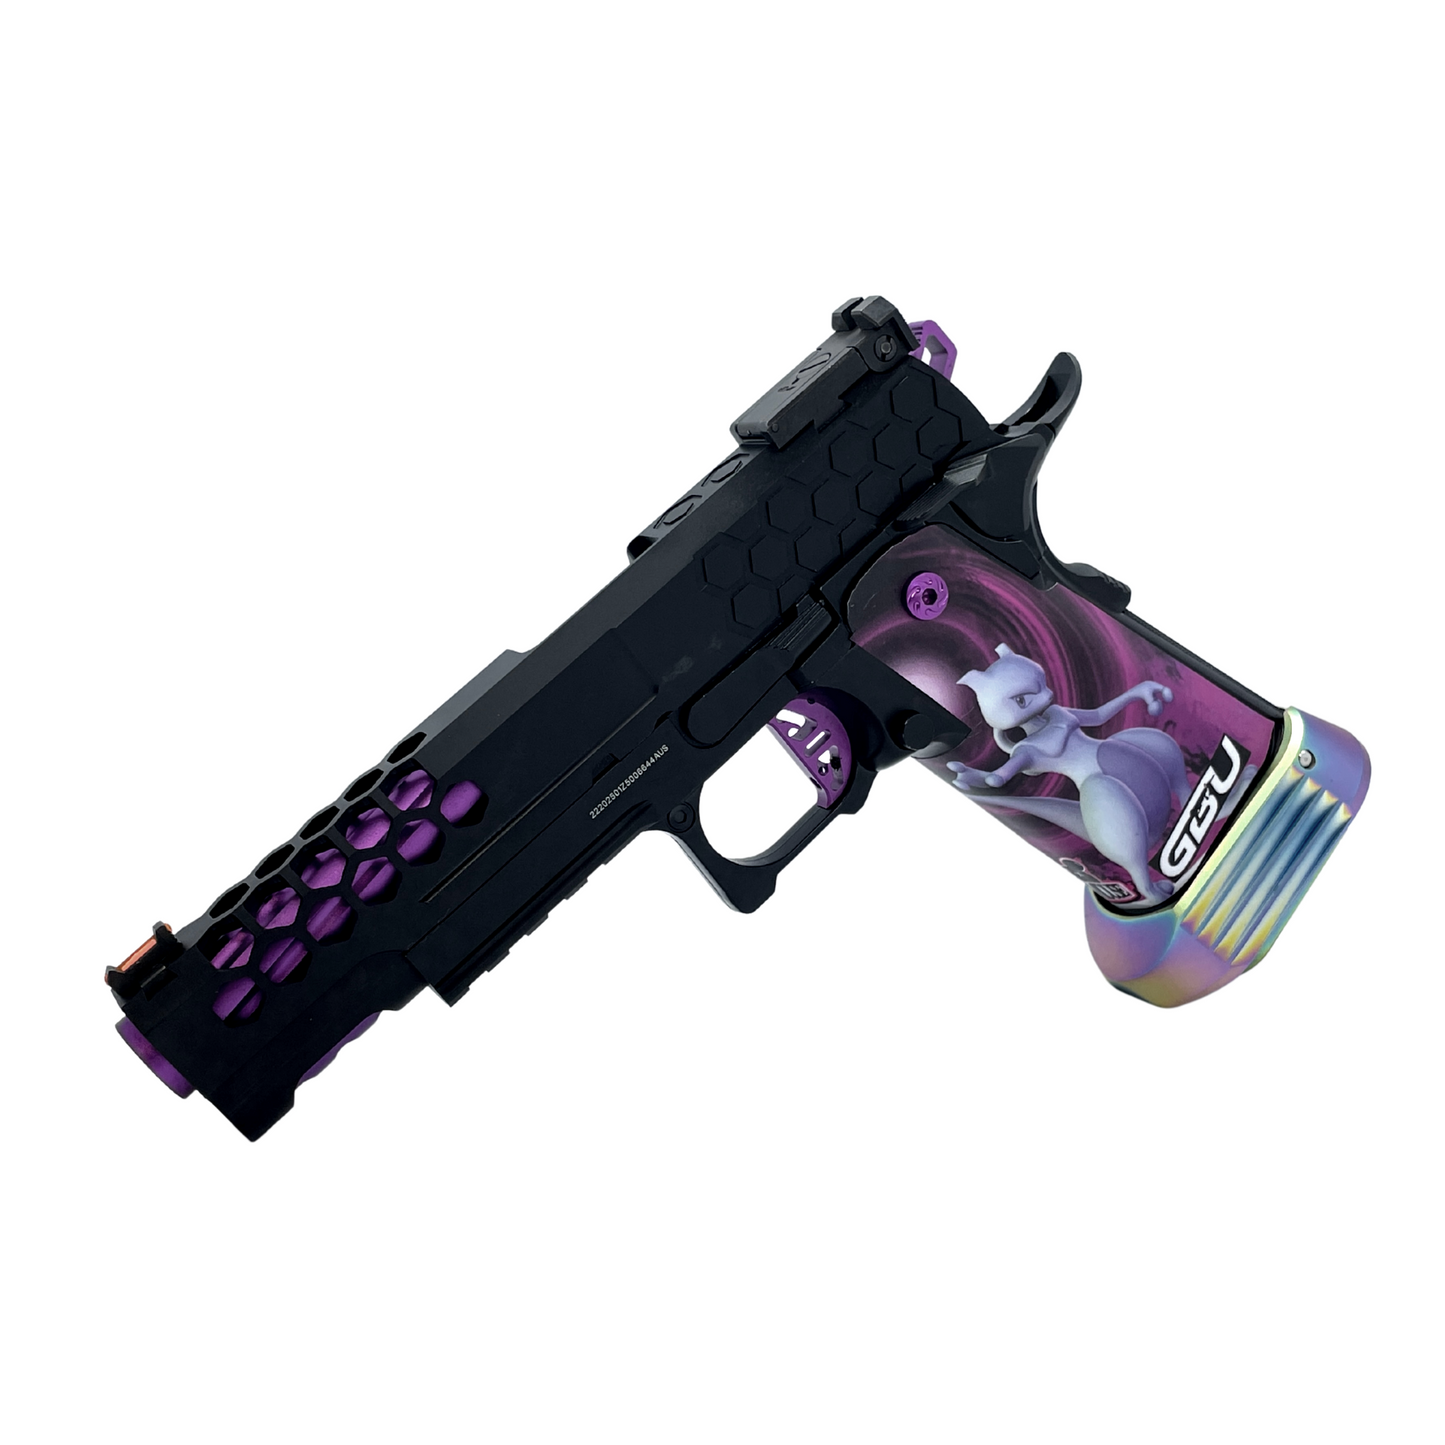 Custom "Mewtwo" G/E Hi-Capa 5.1 Gas Pistol - Gel Blaster